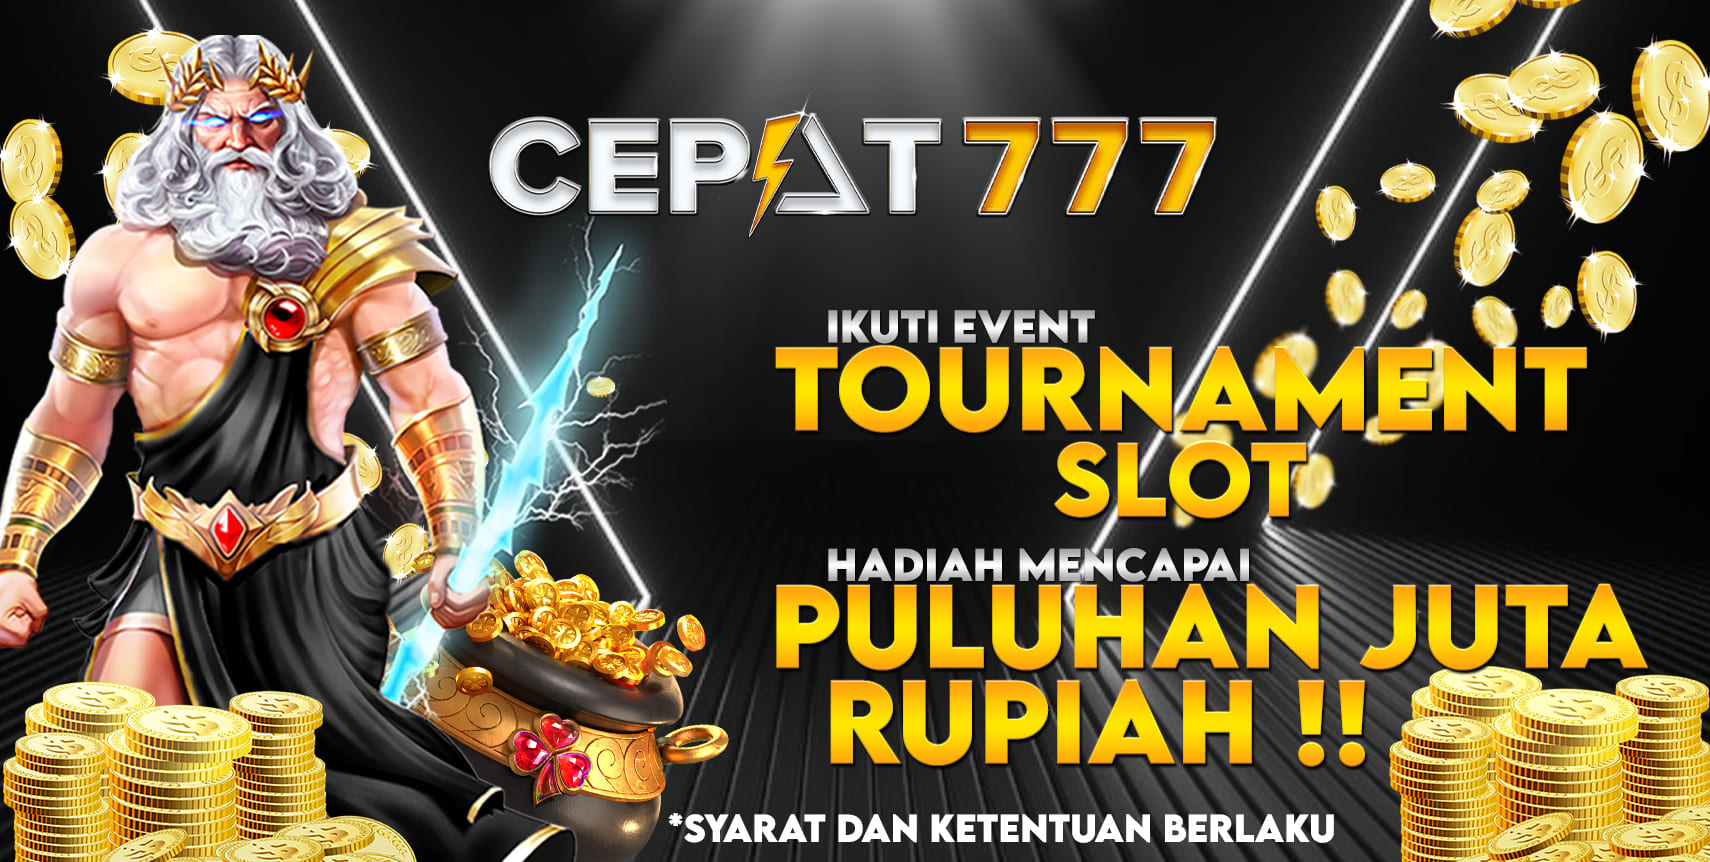 Cepat777 Tournament Slot